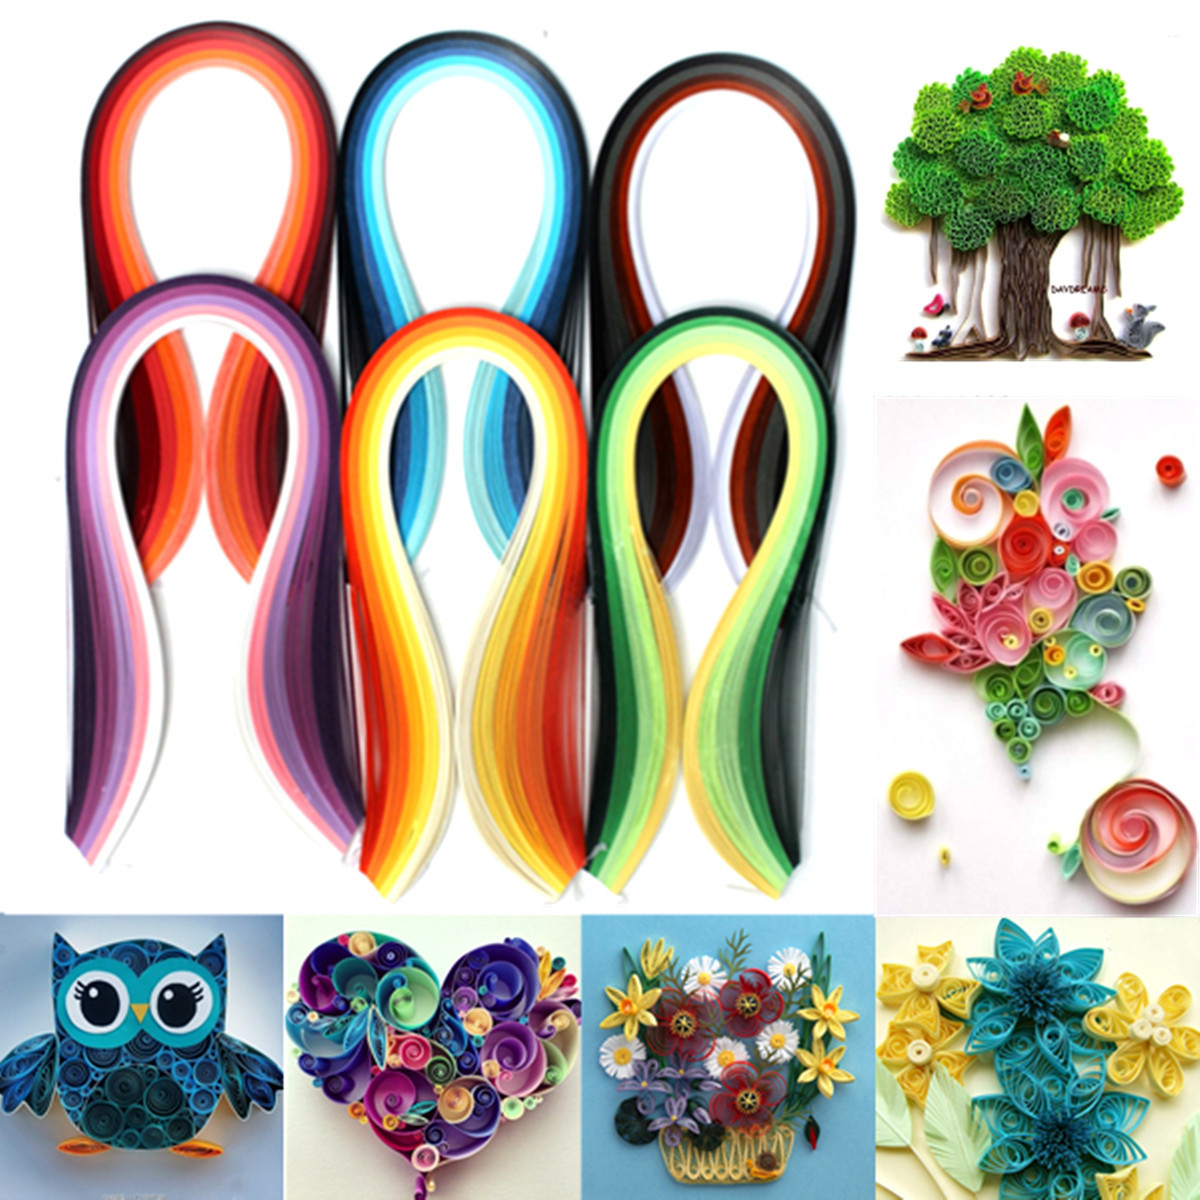 

600 полосок 30 цветов смешанное искусство квиллинг бумажное искусство оригами DIY ремесло